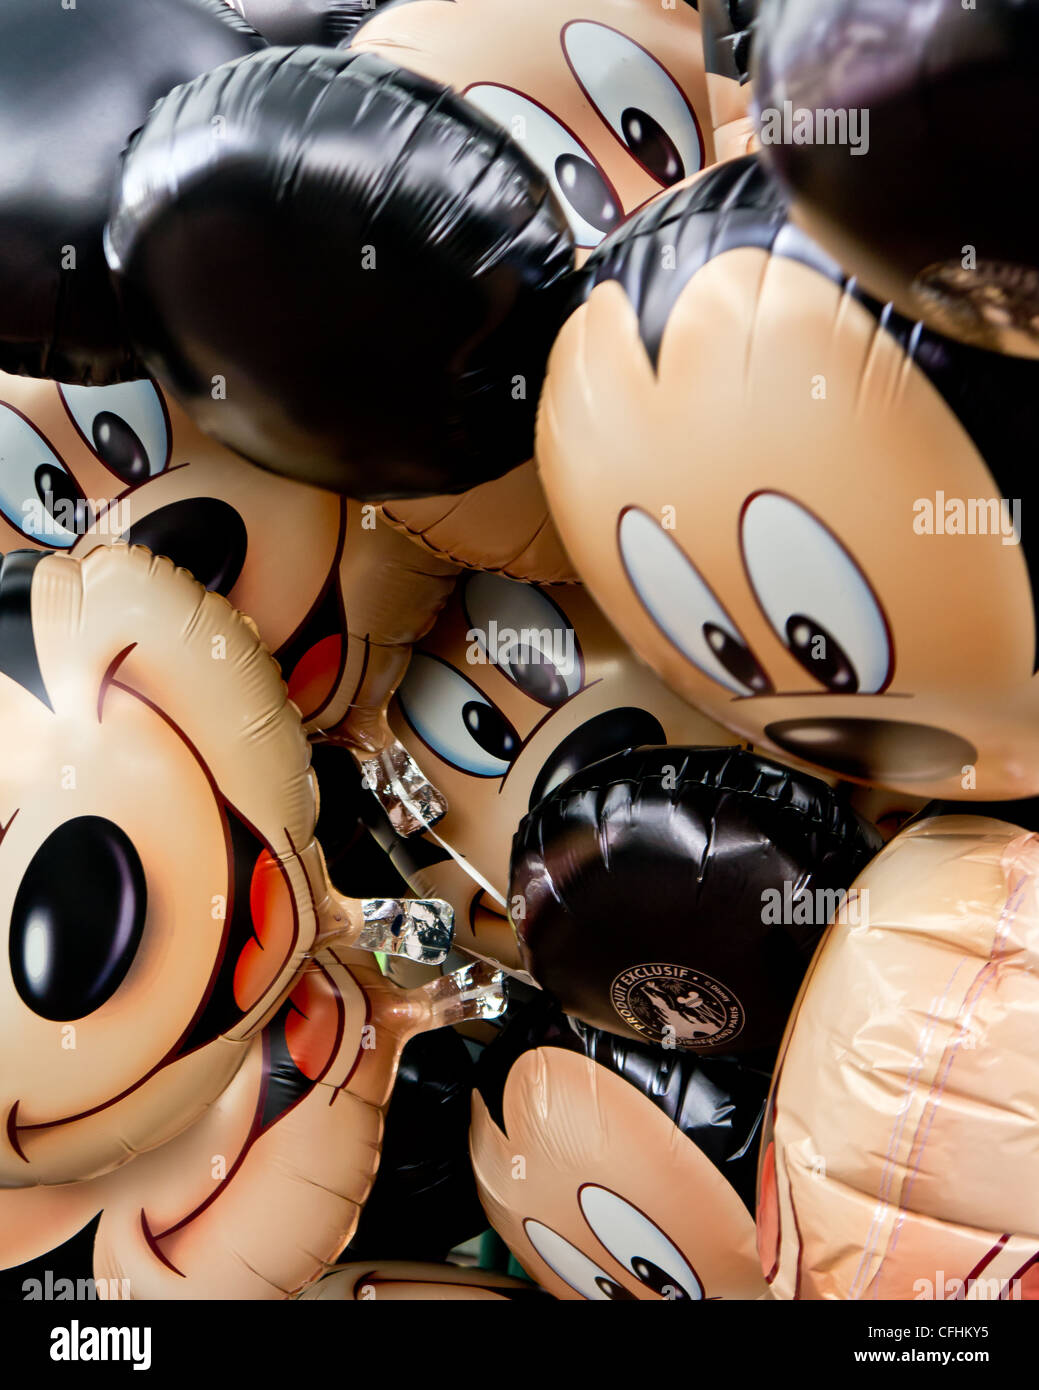 Un gros plan d'un tas de ballons Mickey liées ensemble. Banque D'Images